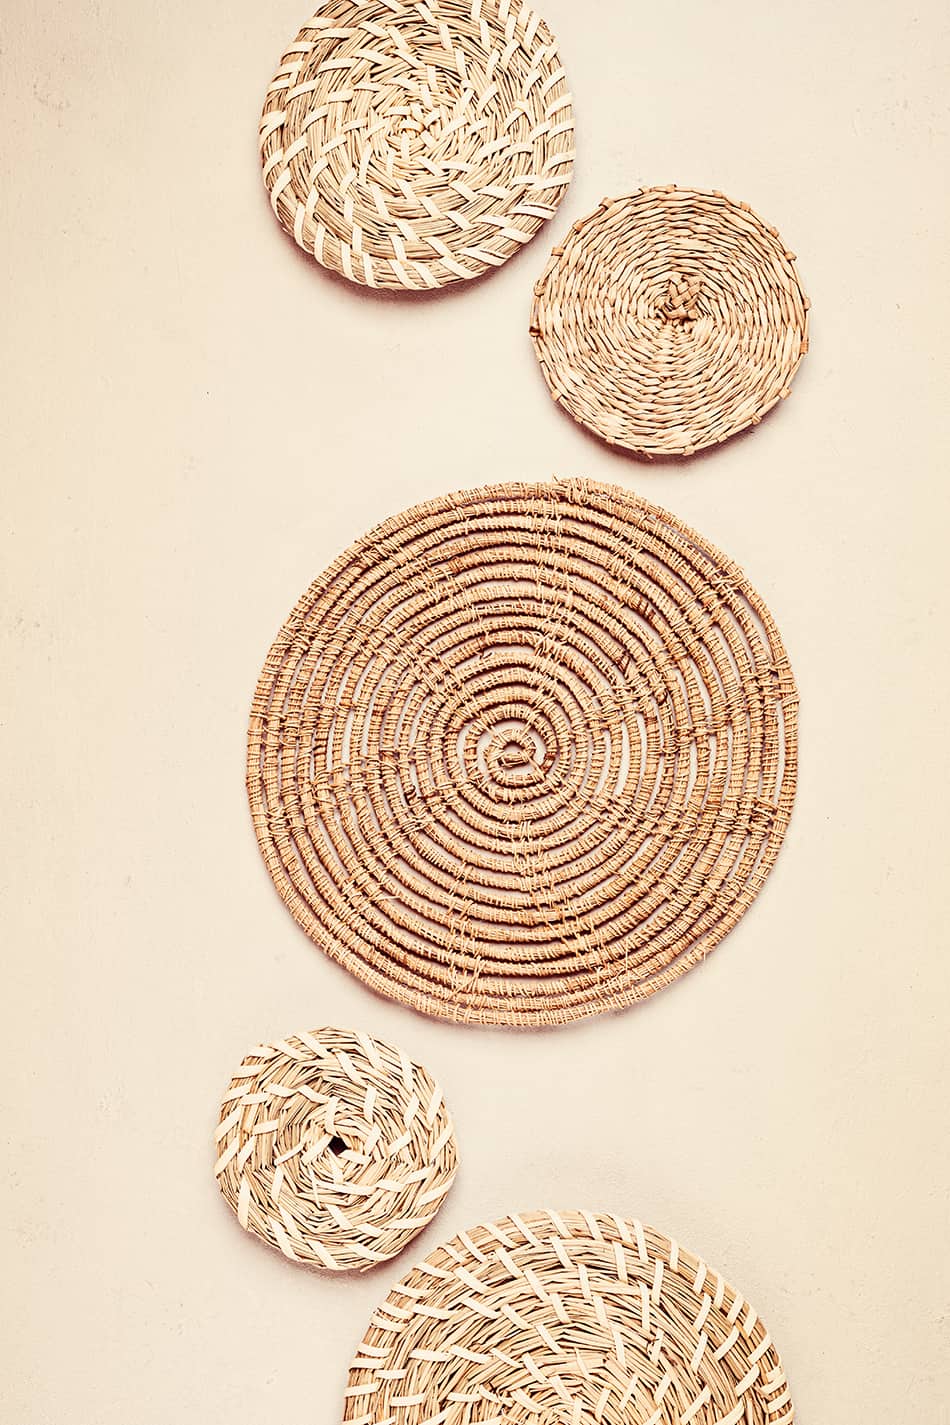 Boho-Style Woven Baskets